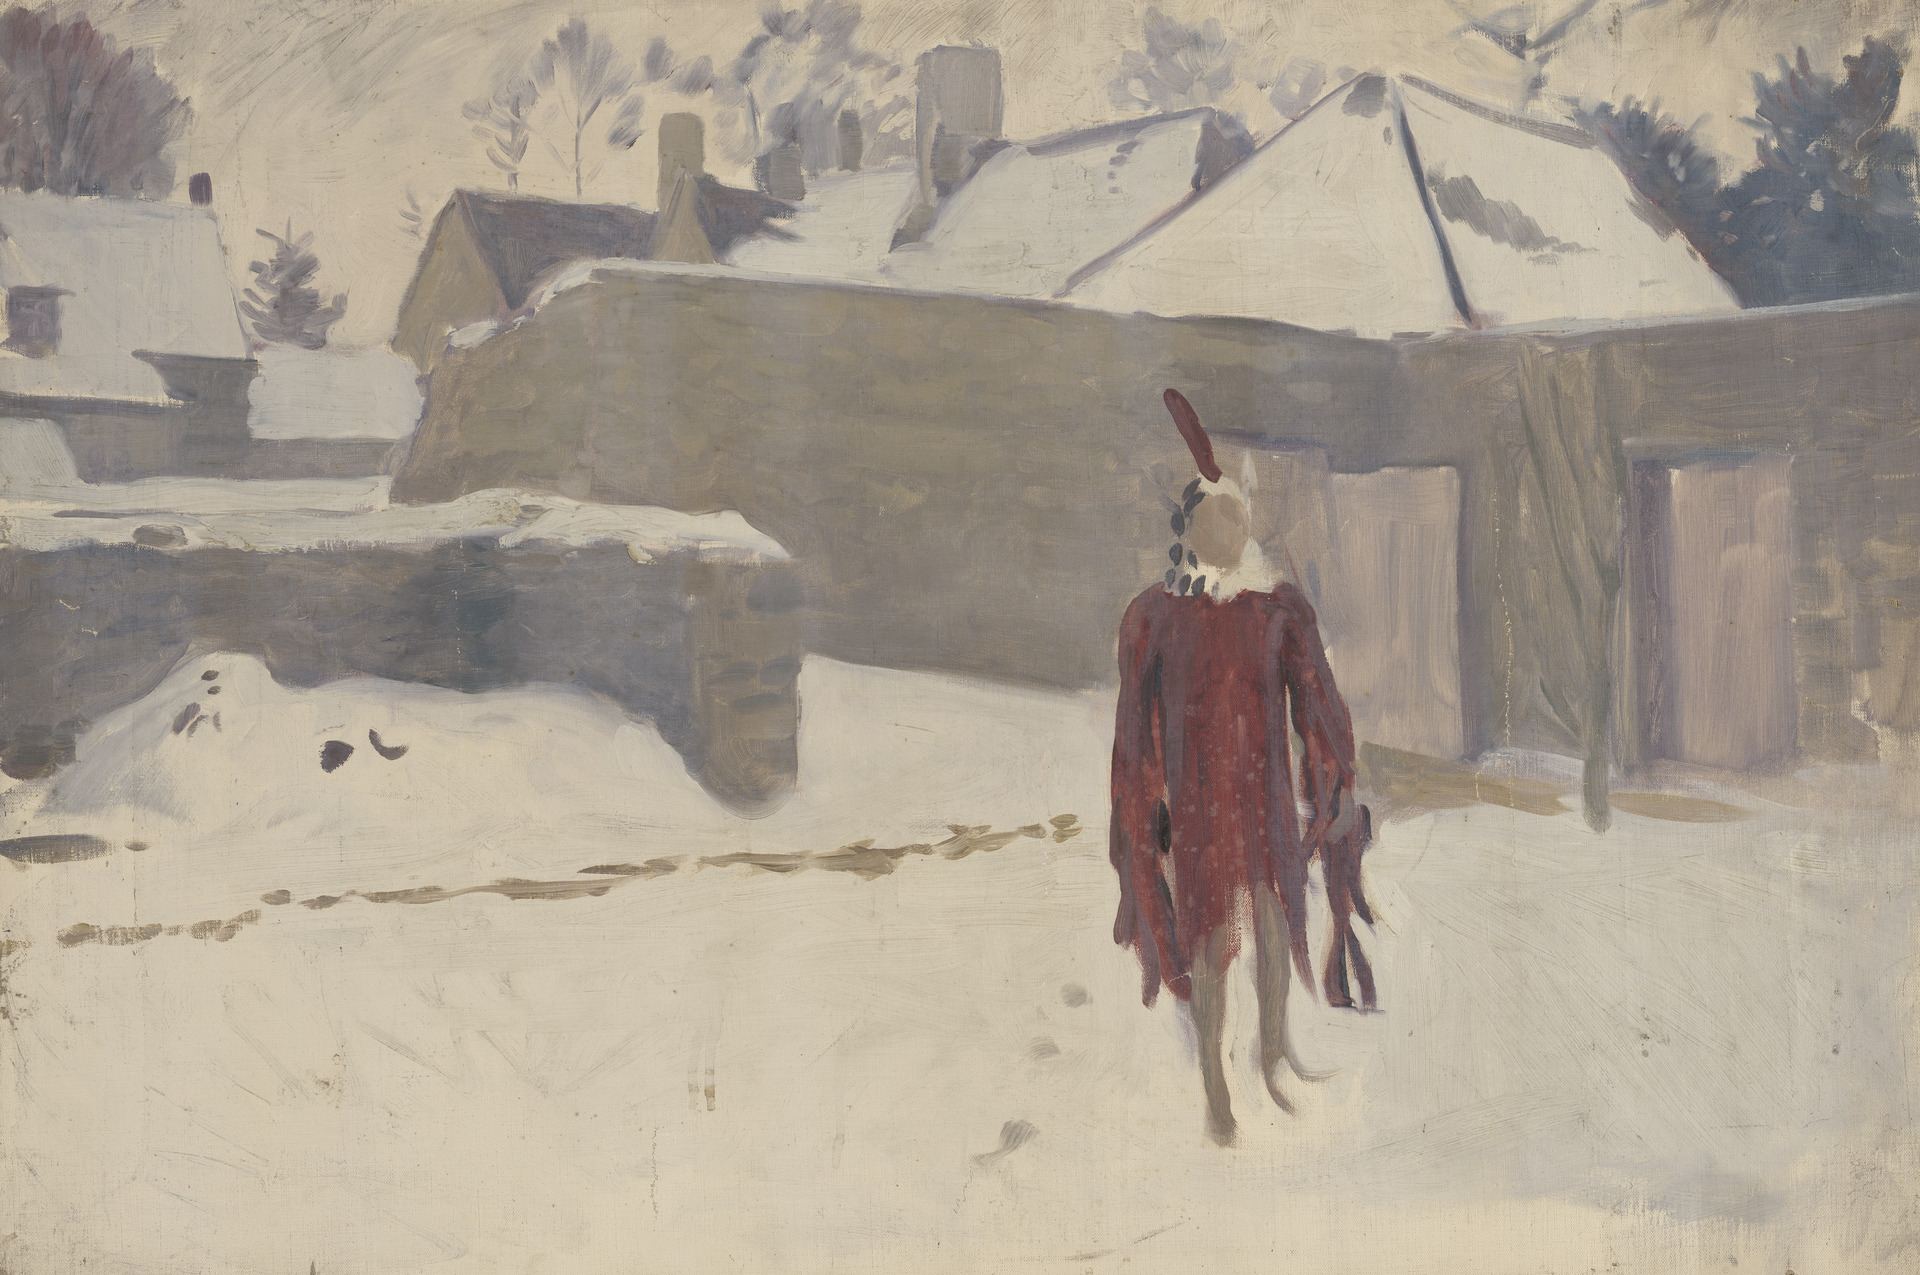 Maniquí en la nieve by John Singer Sargent - ca. 1891–93 - 63,5 x 76,2 cm Galería de Arte de la Universidad Yale